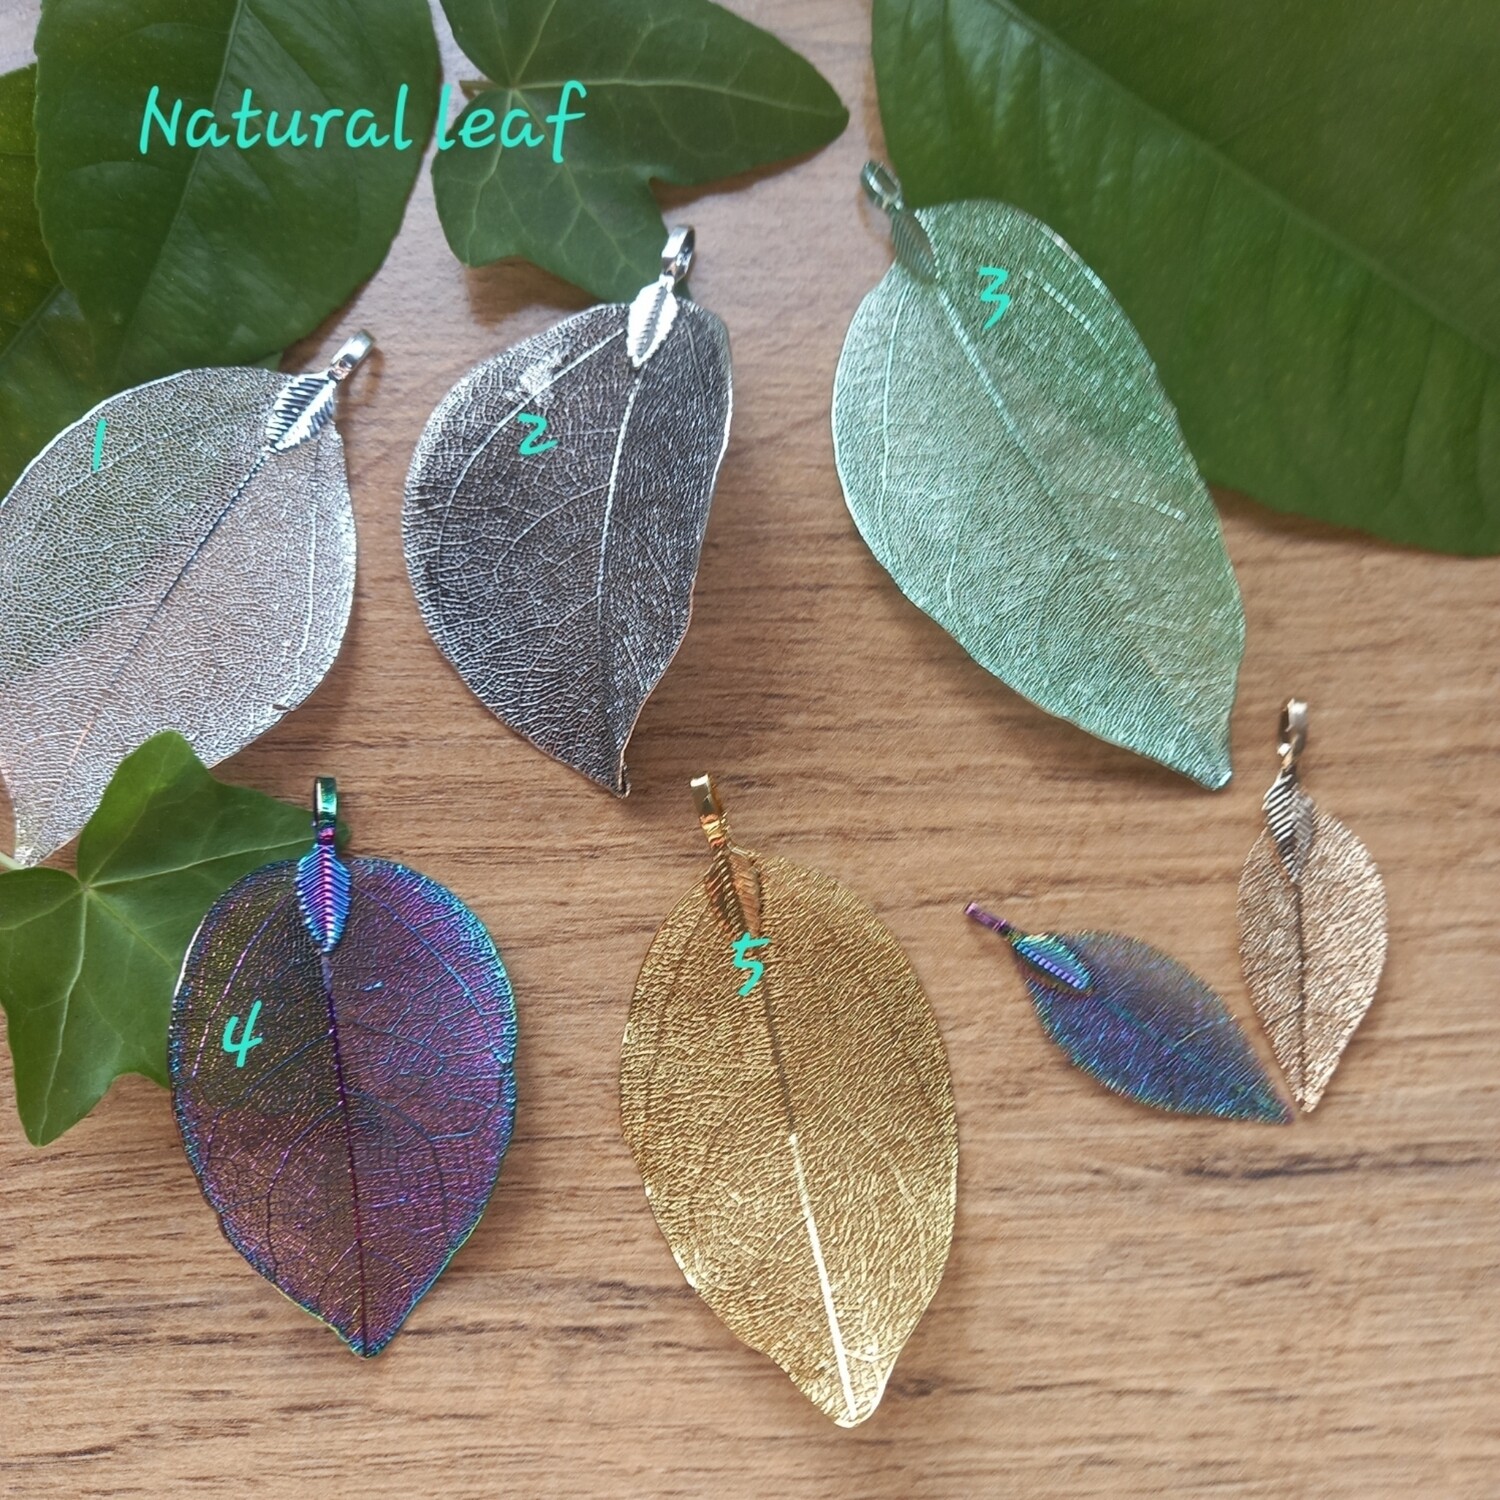 Natural leaf 05 gold